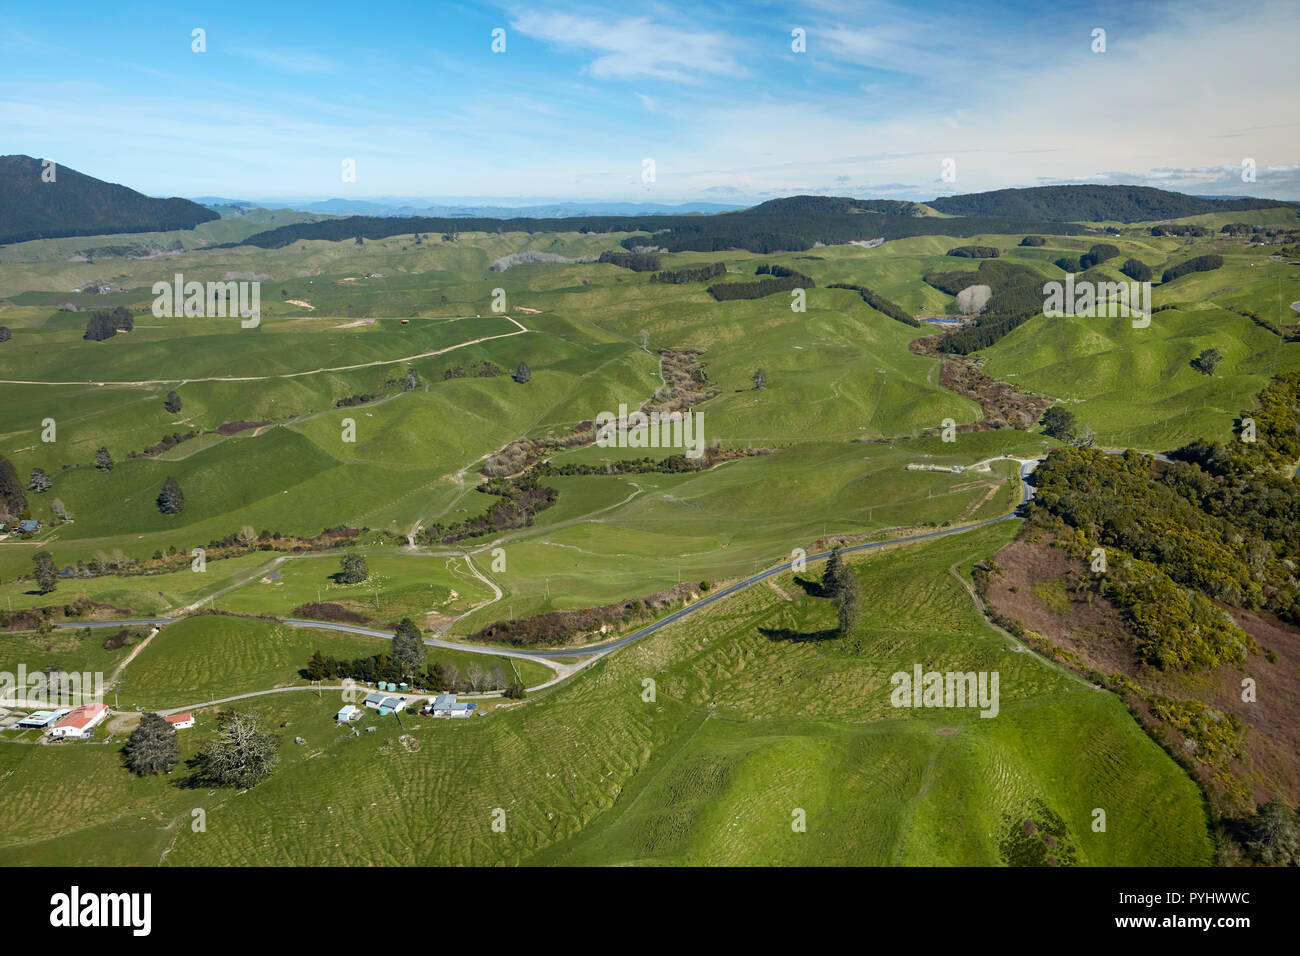 Les terres agricoles près de Rotorua, île du Nord, Nouvelle-Zélande - vue aérienne Banque D'Images